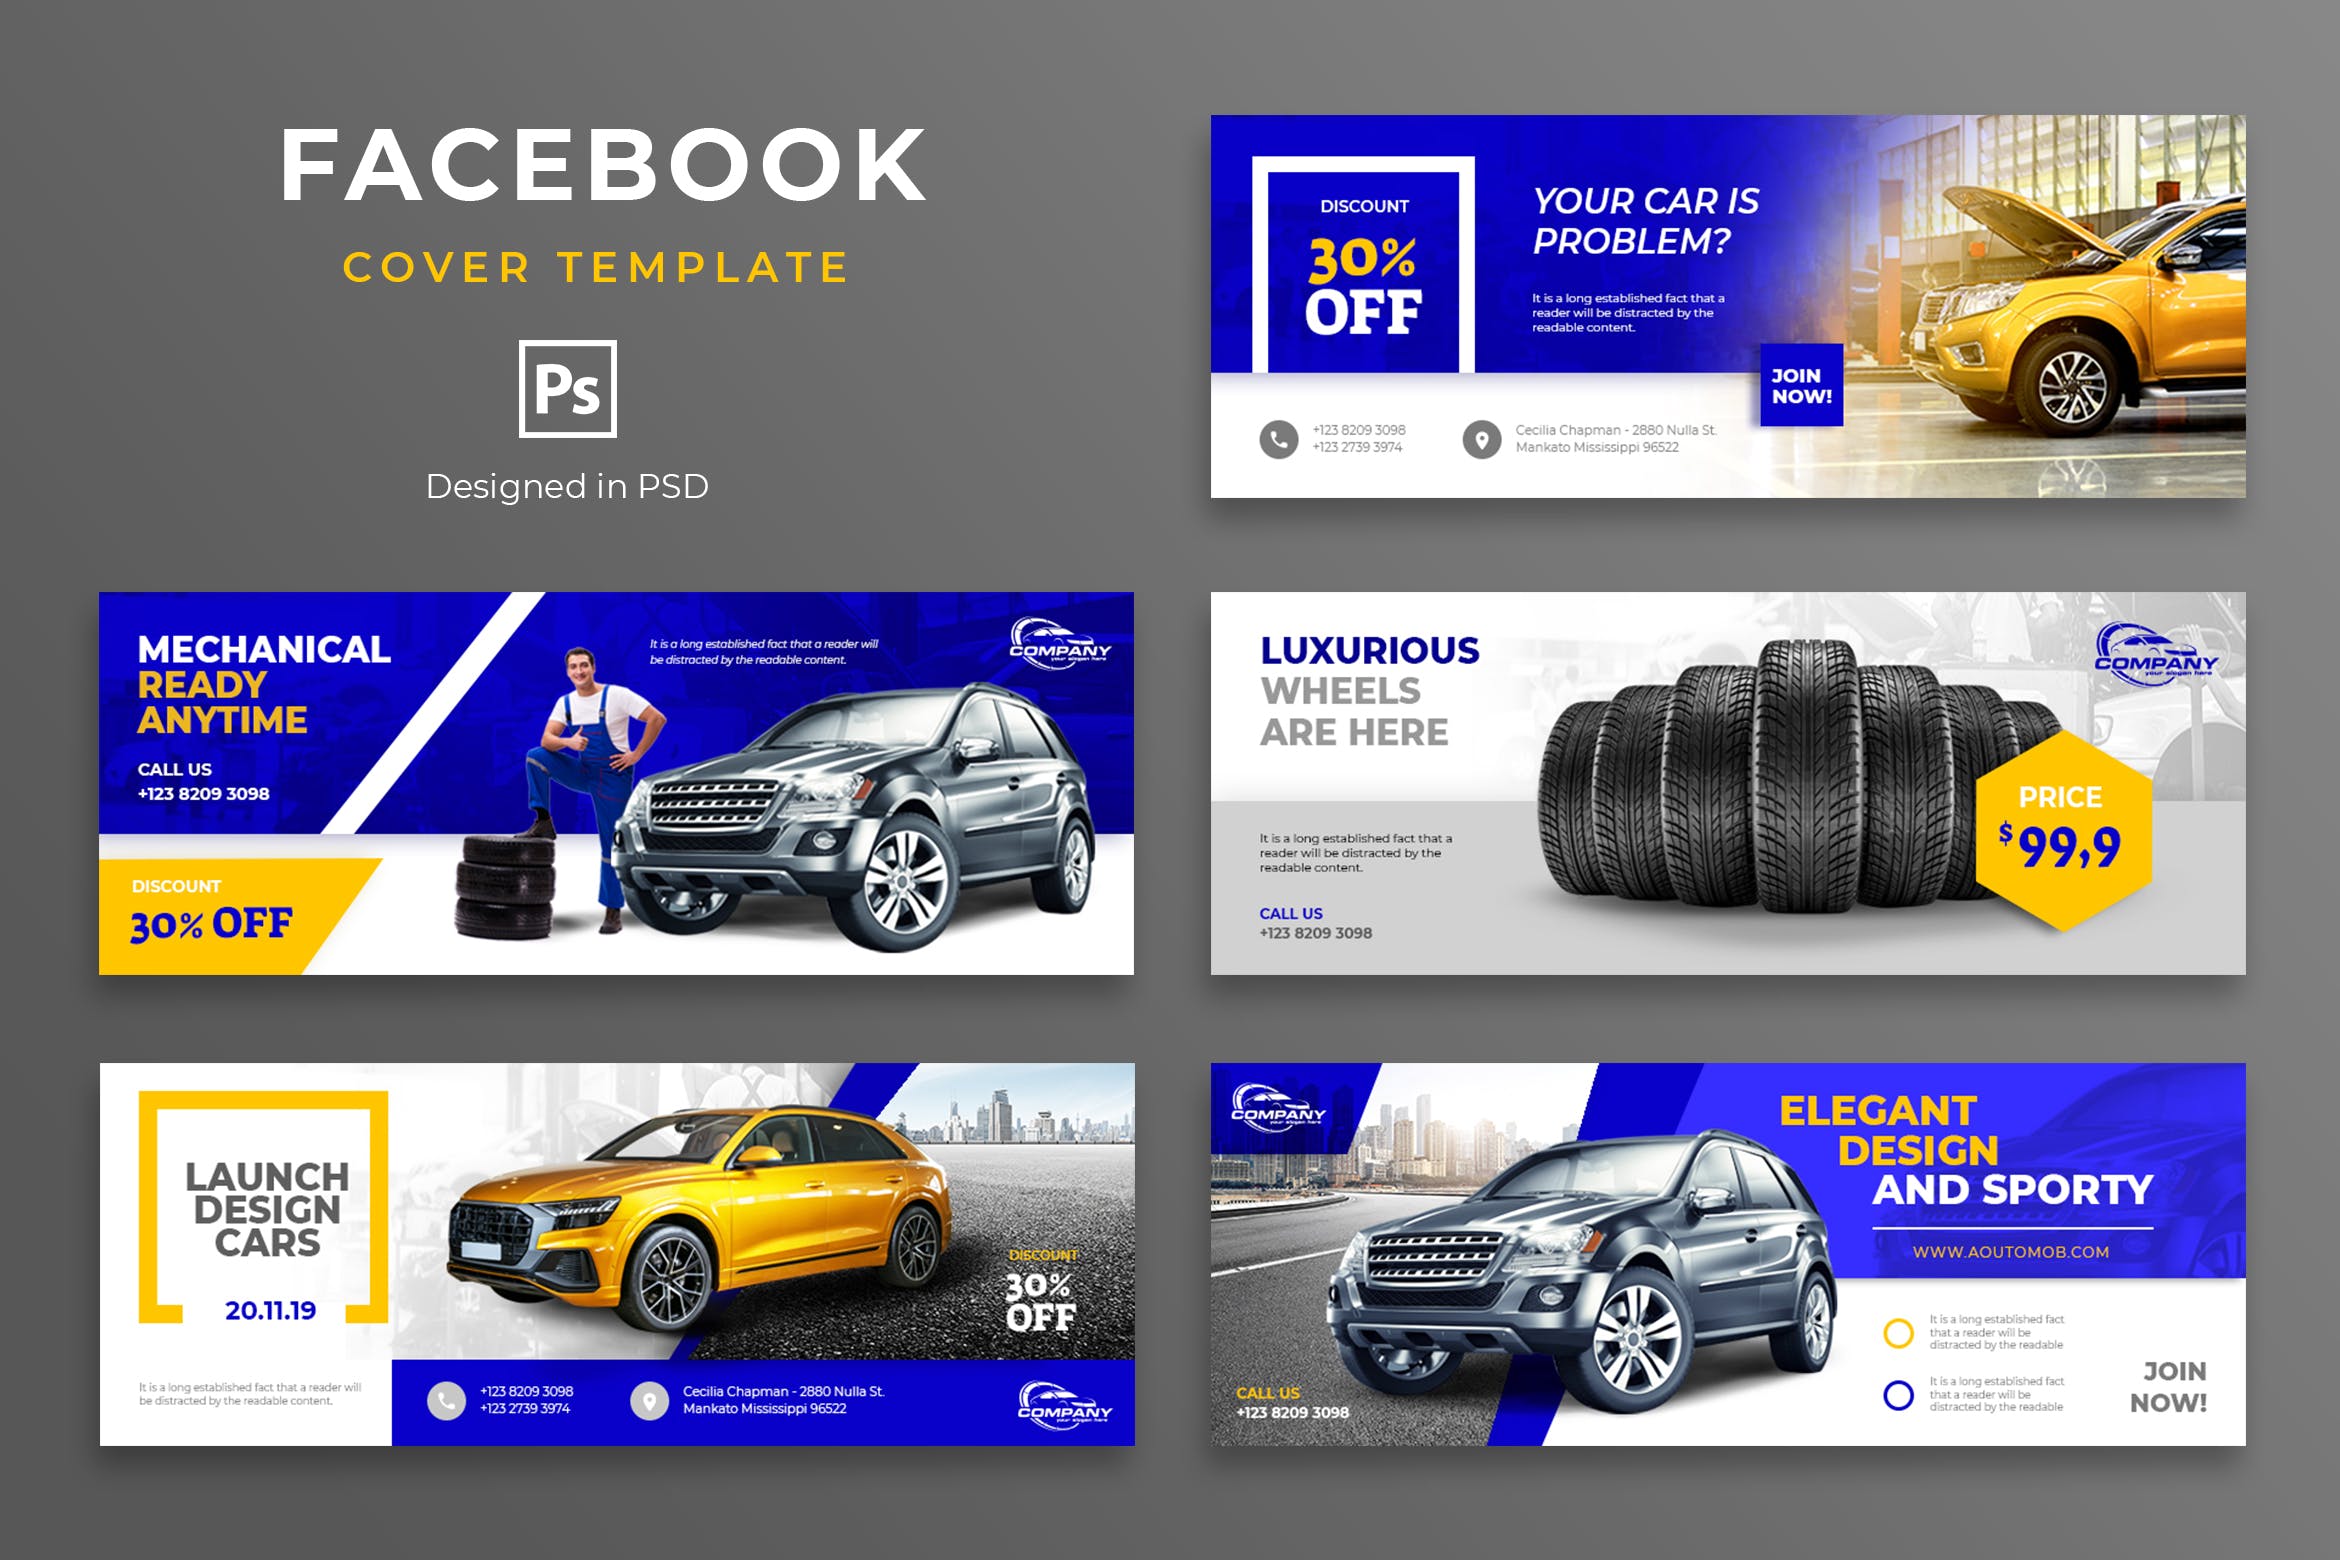 汽车品牌Facebook营销推广主页封面设计模板素材库精选 Automotive Facebook Cover Template插图